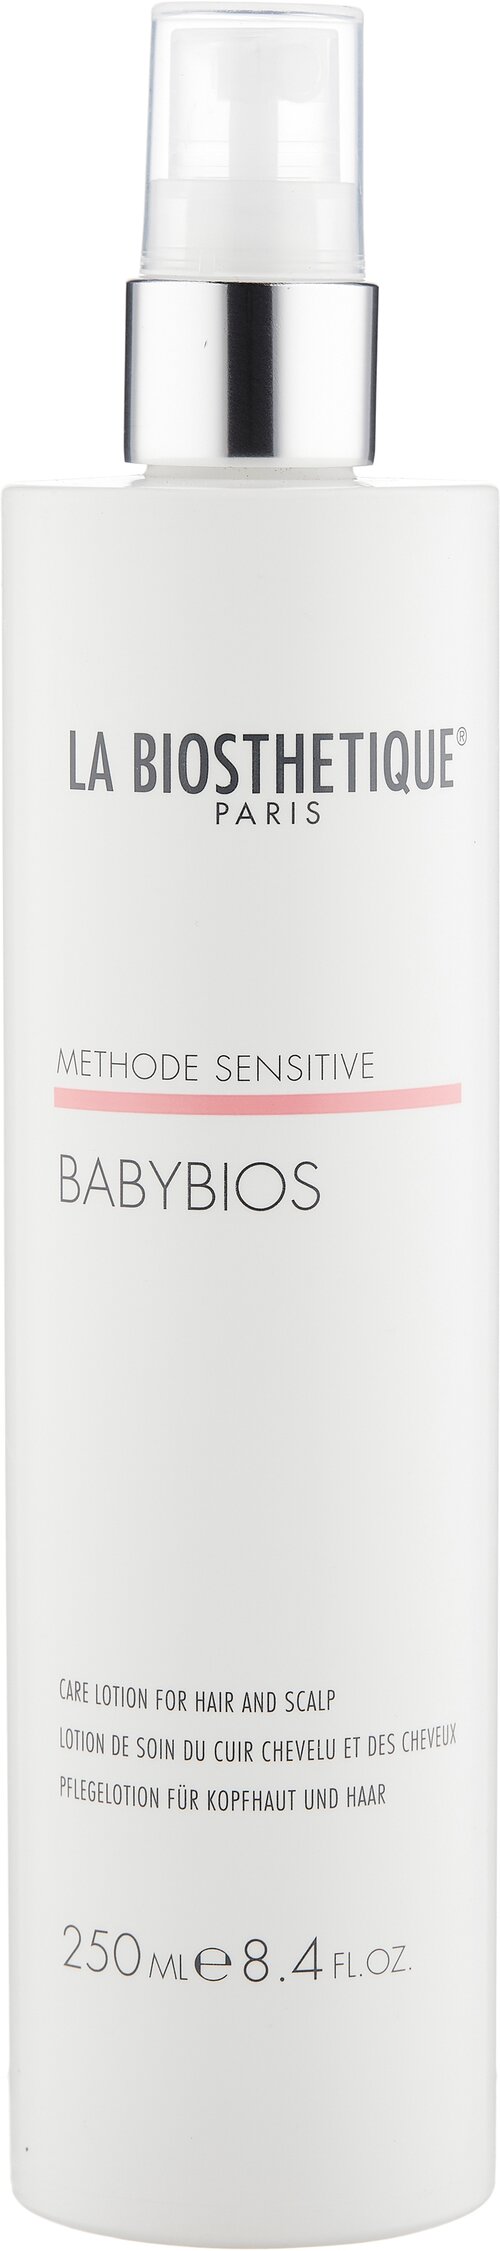 La Biosthetique Structure Кондиционер-лосьон для волос и кожи головы Babybios, 250 мл, бутылка